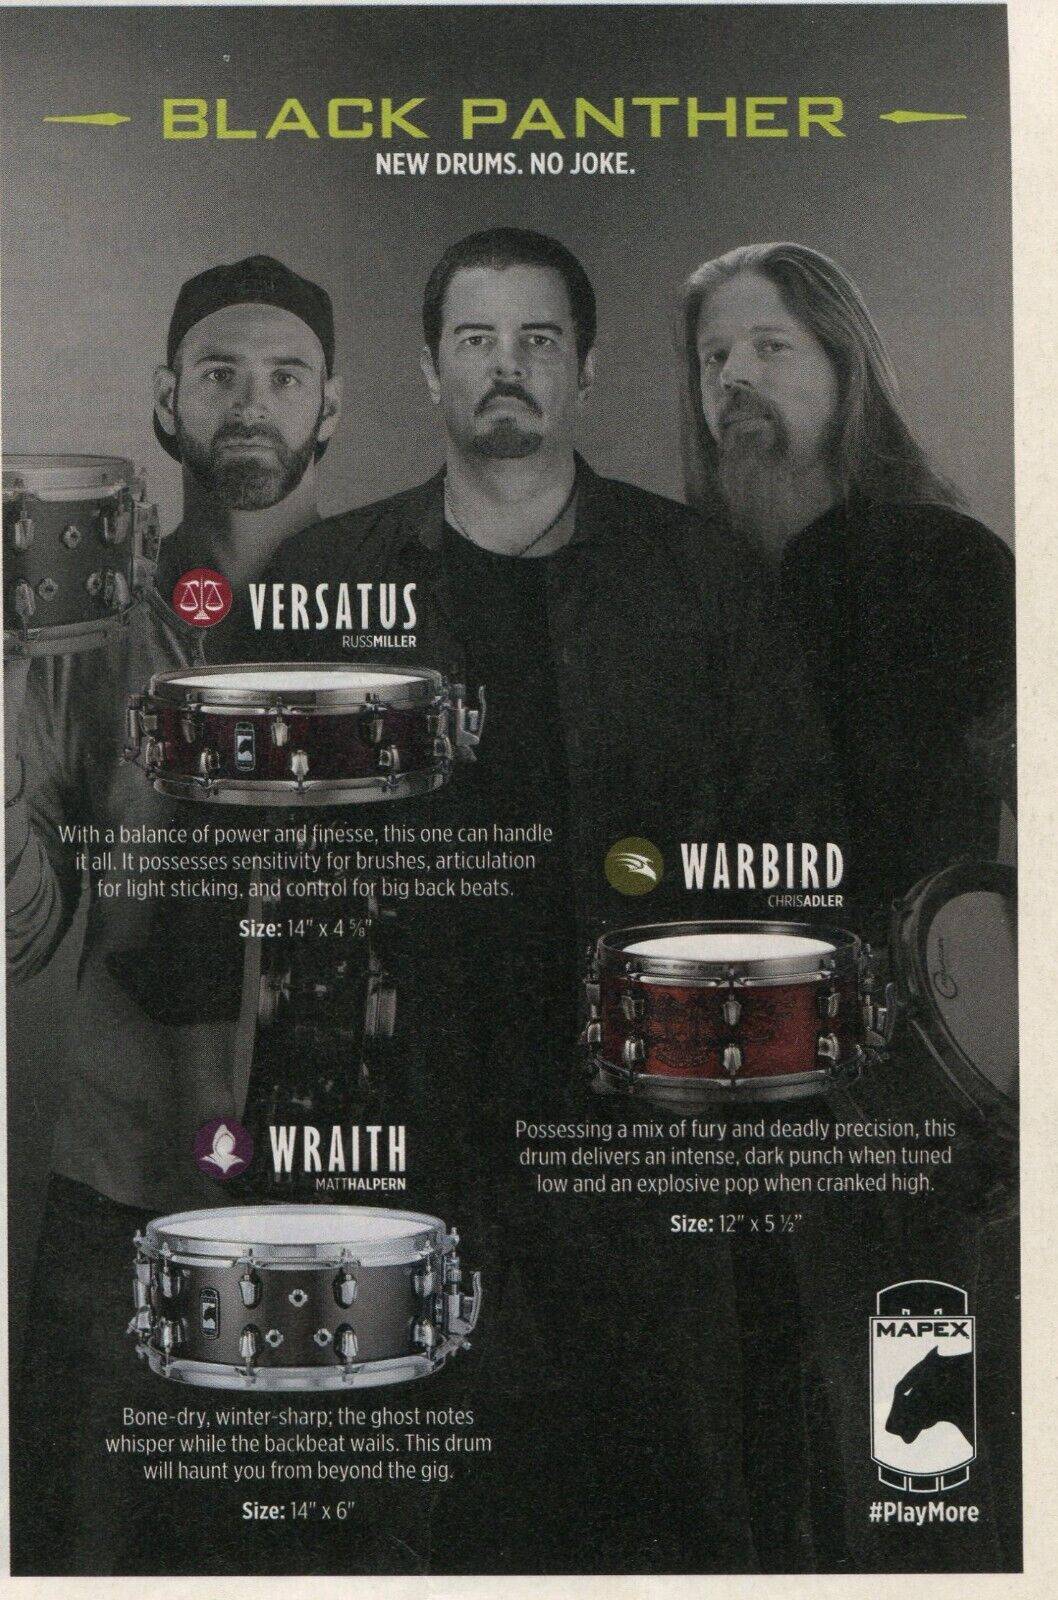 2015 small Print Ad of Mapex Snare Drums w Russ Miller Matt Halpern Chris Adler